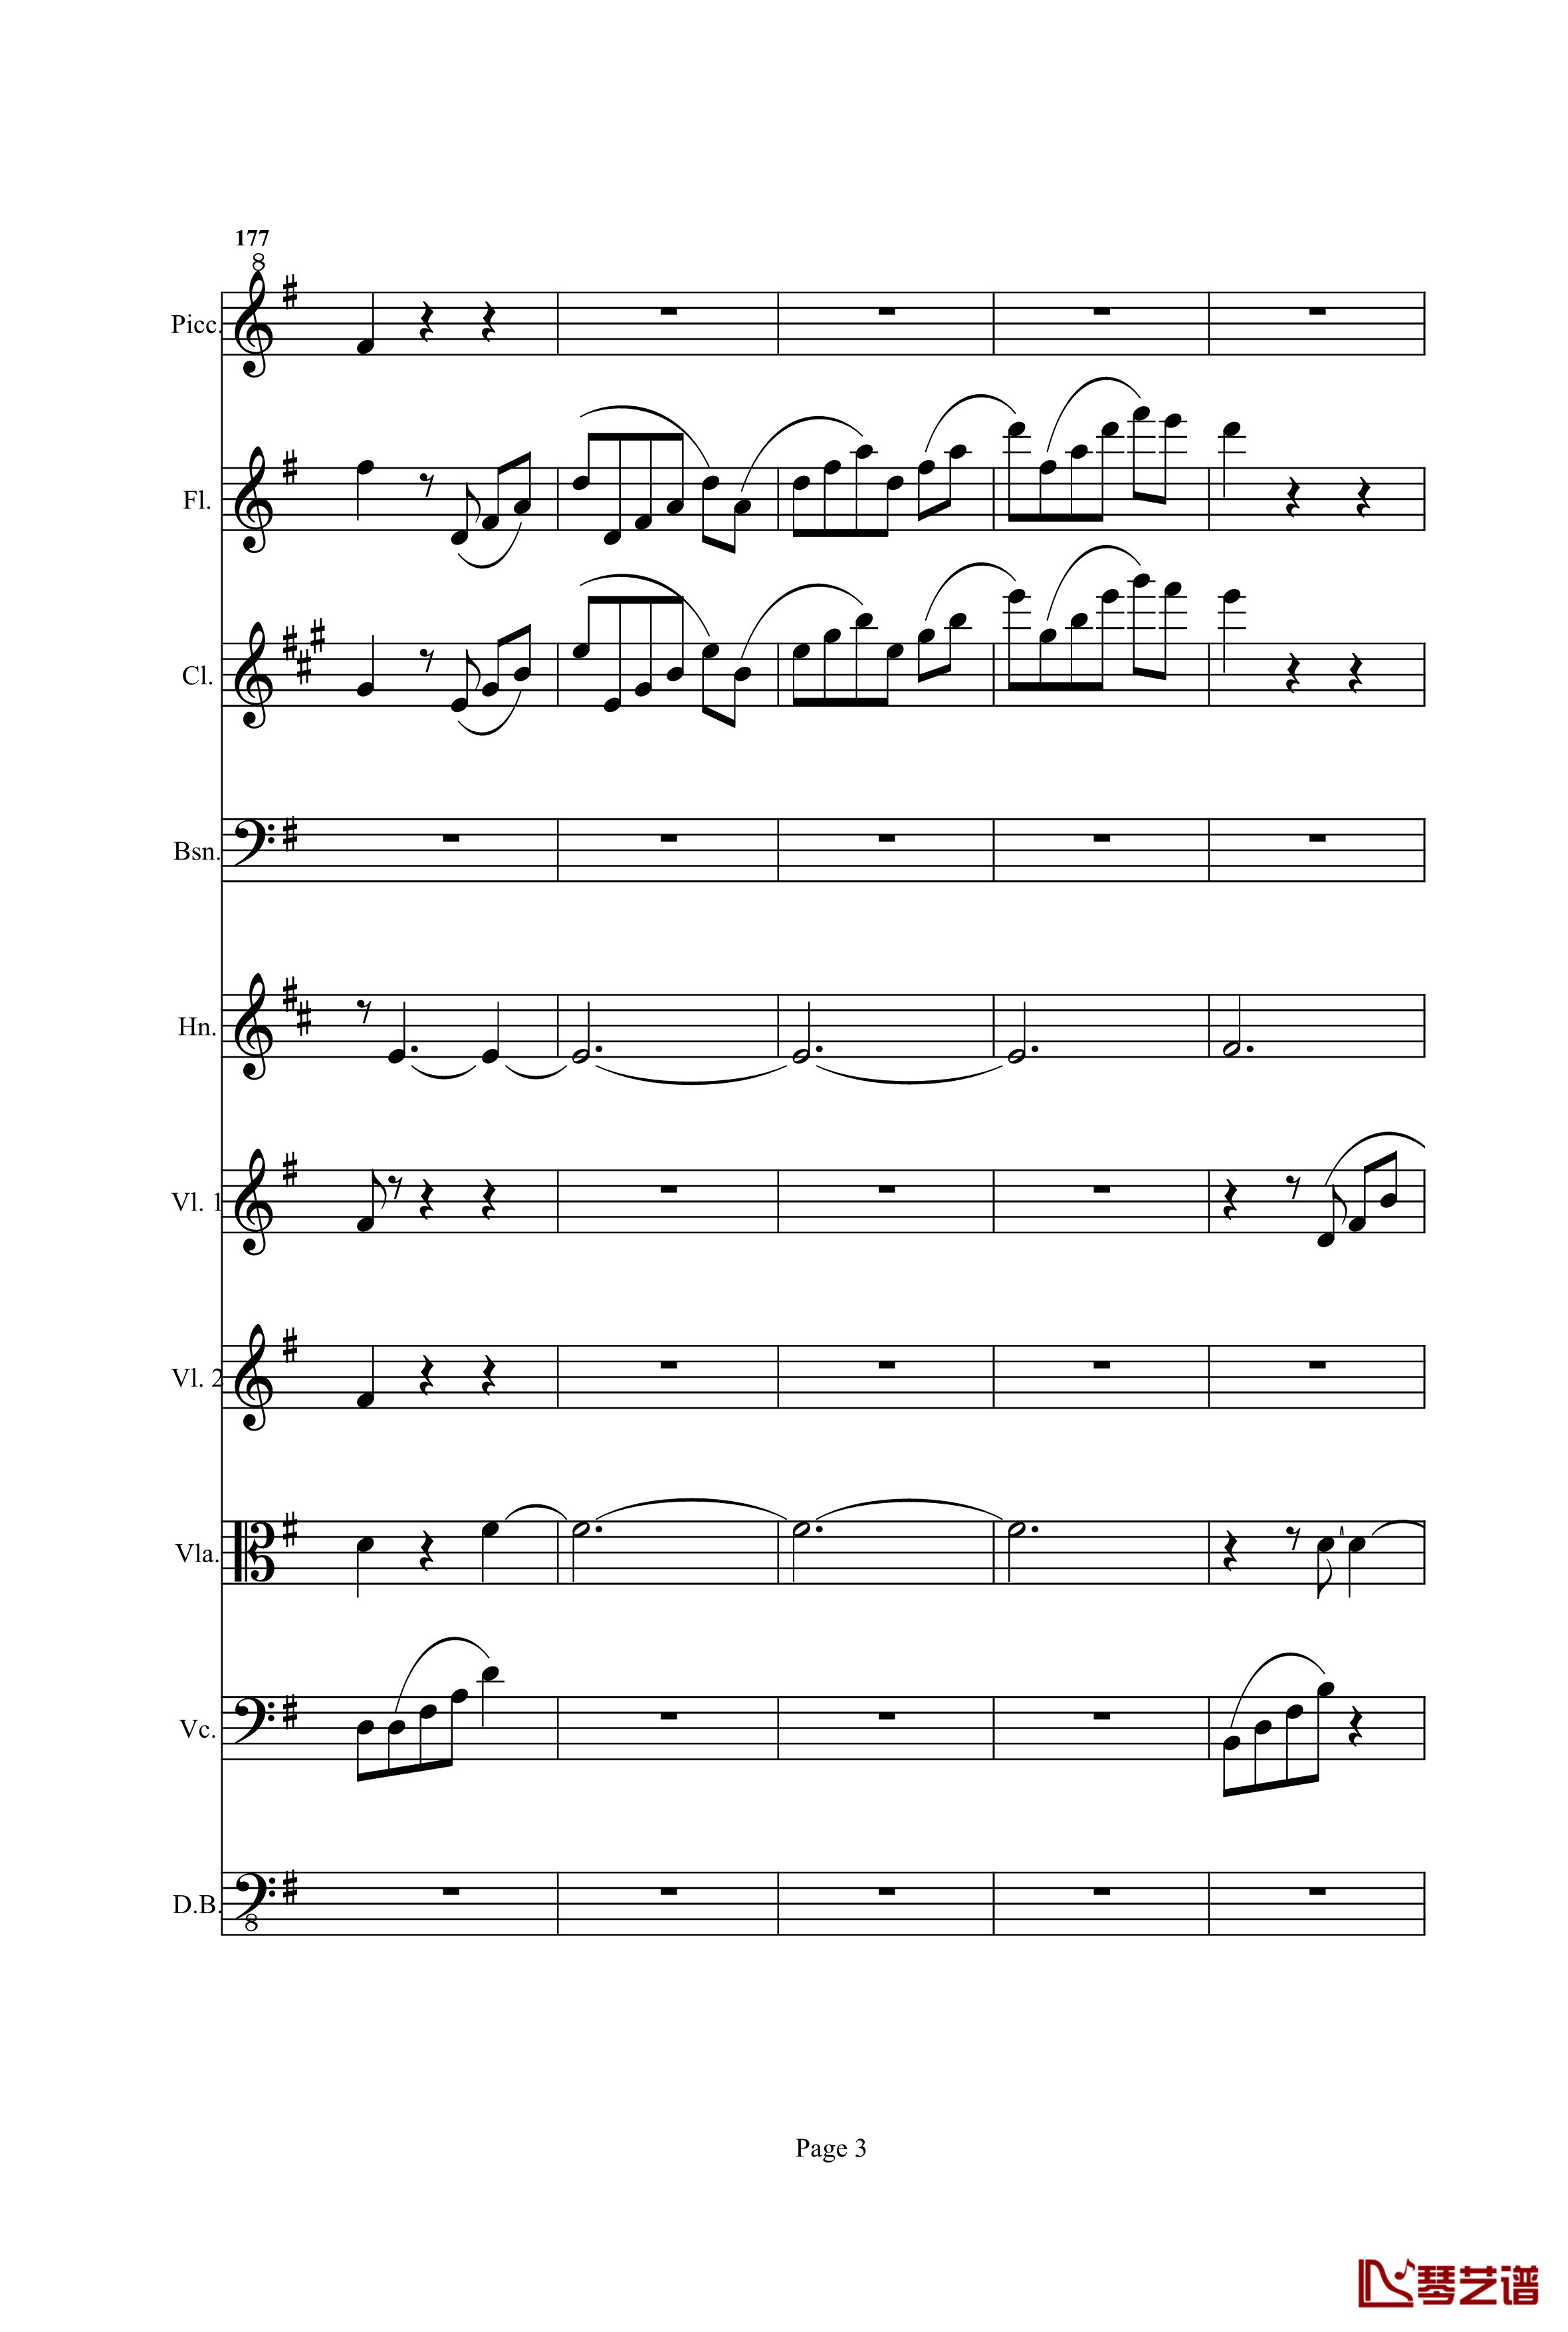 奏鸣曲之交响钢琴谱-第25首-Ⅰ-贝多芬-beethoven3